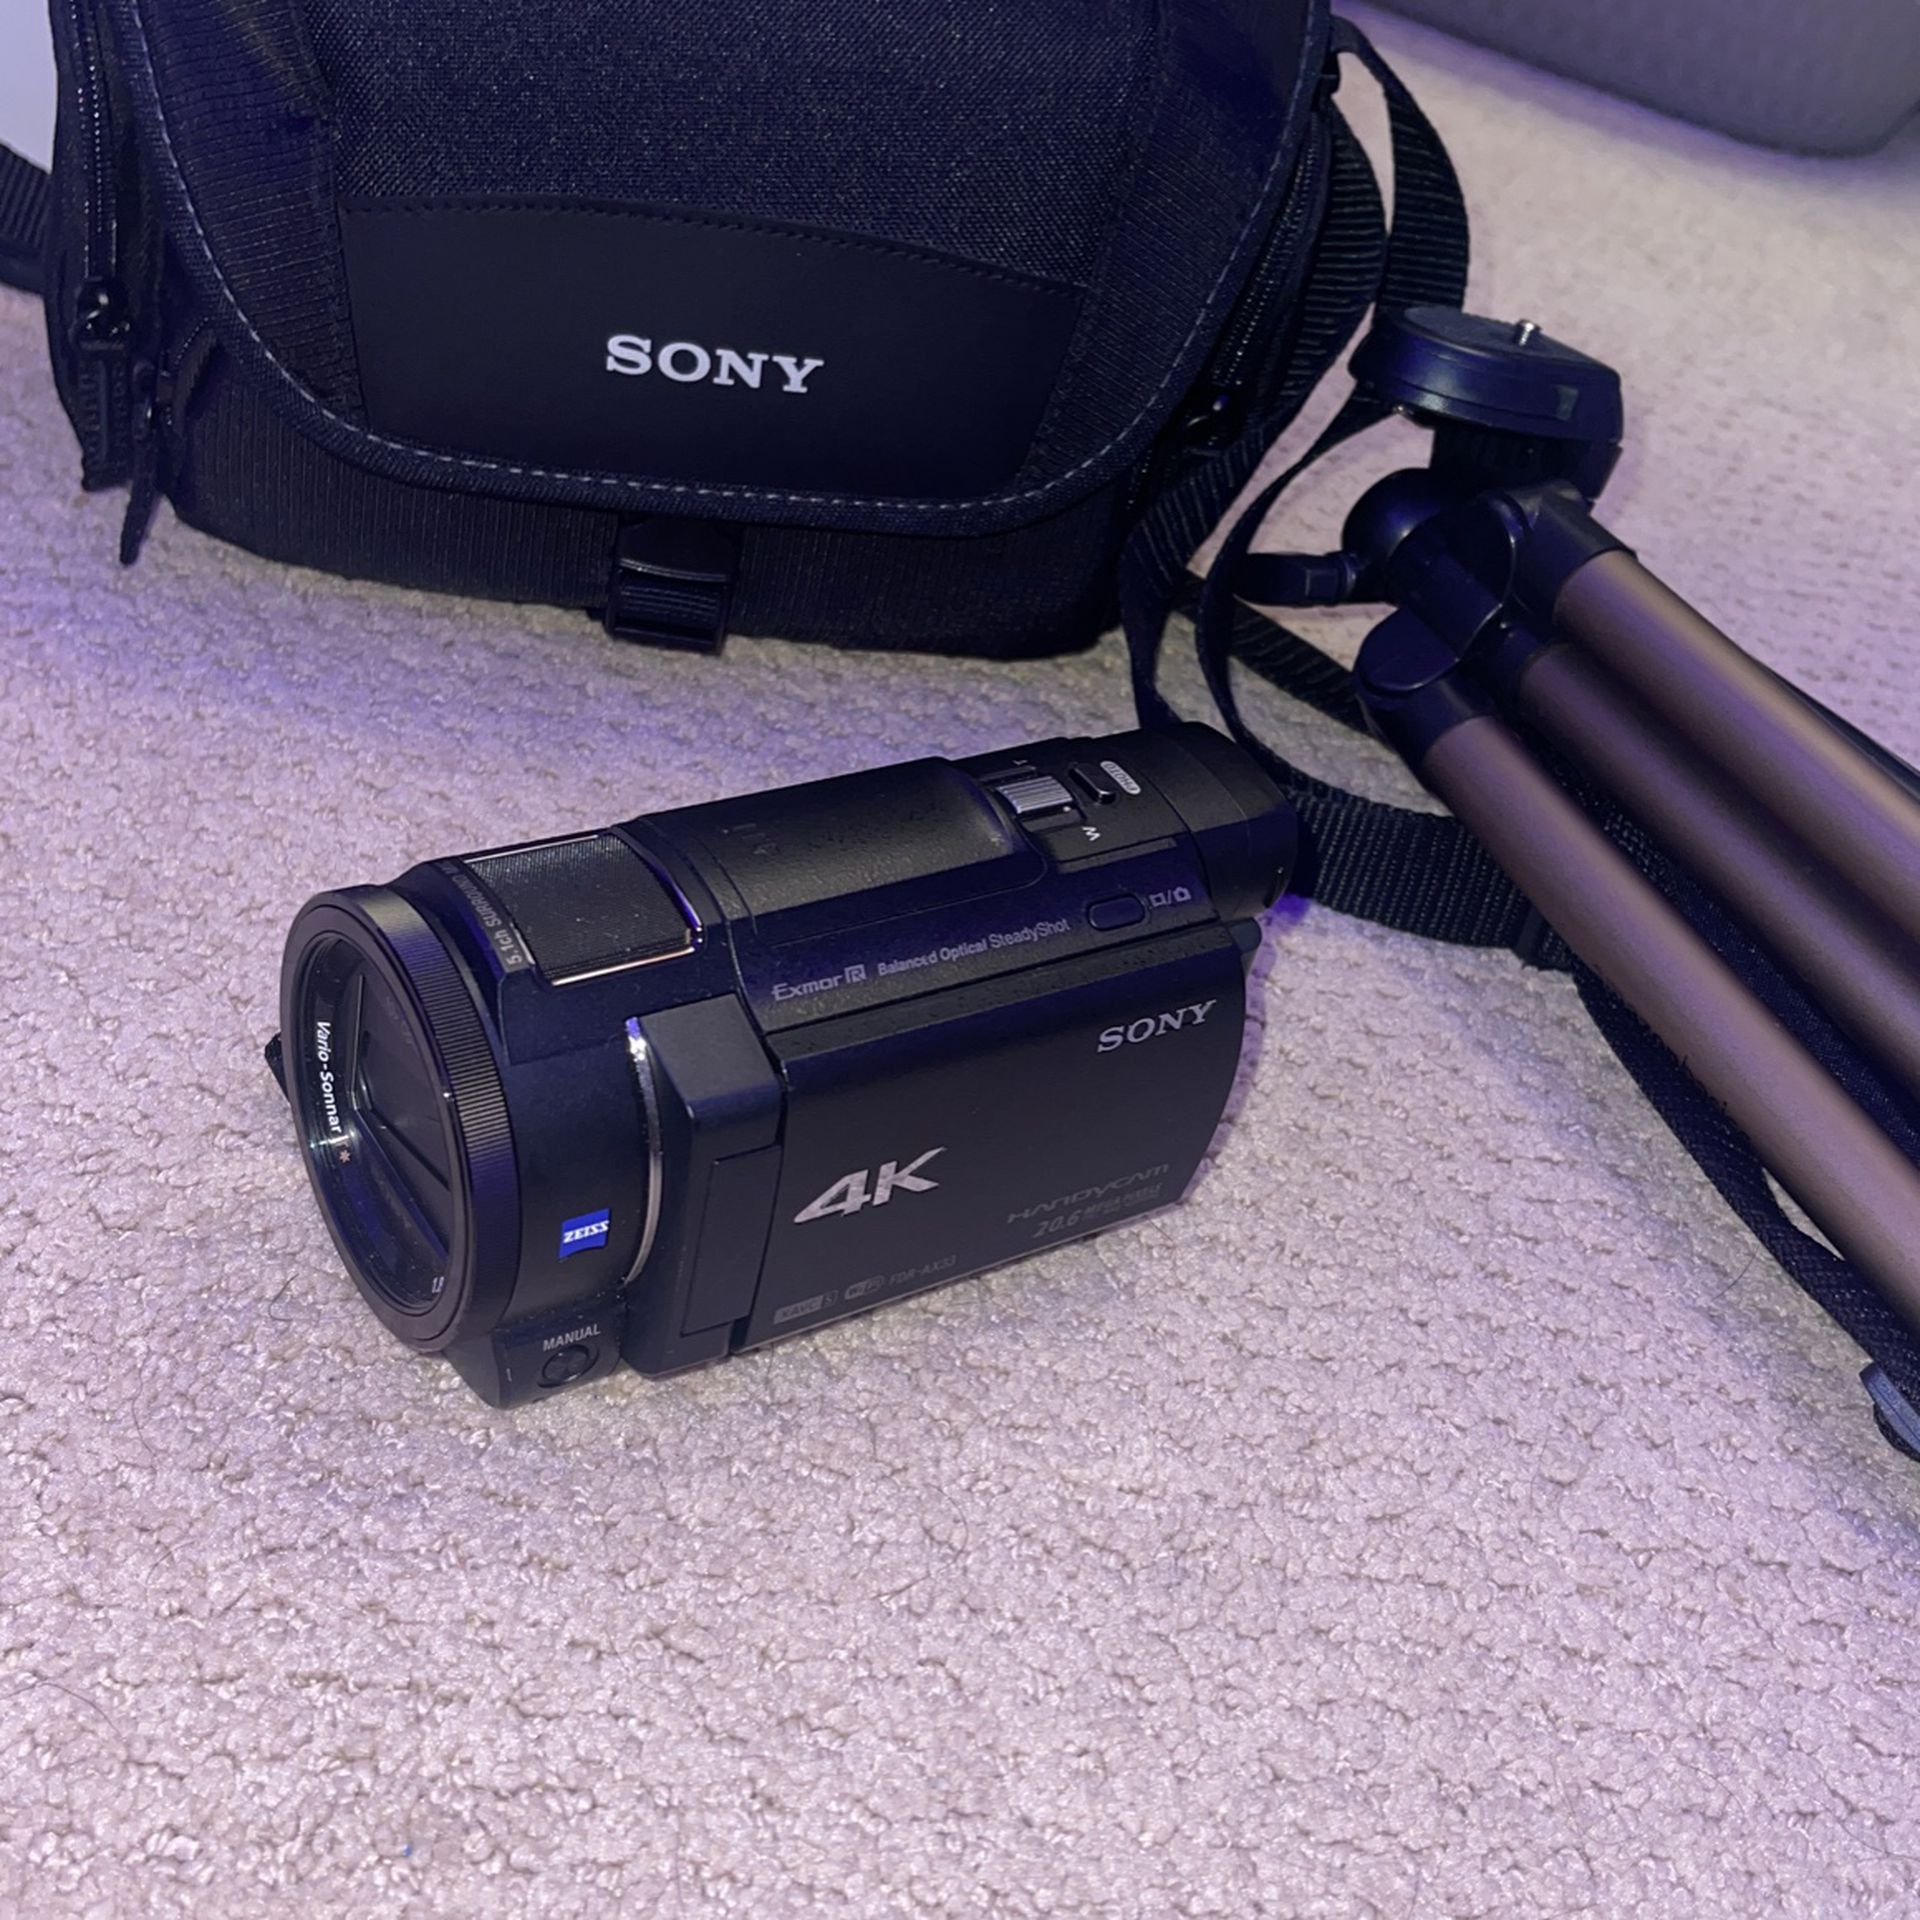 Sony 4K Handy cam Video Camera (FDR-AX33)